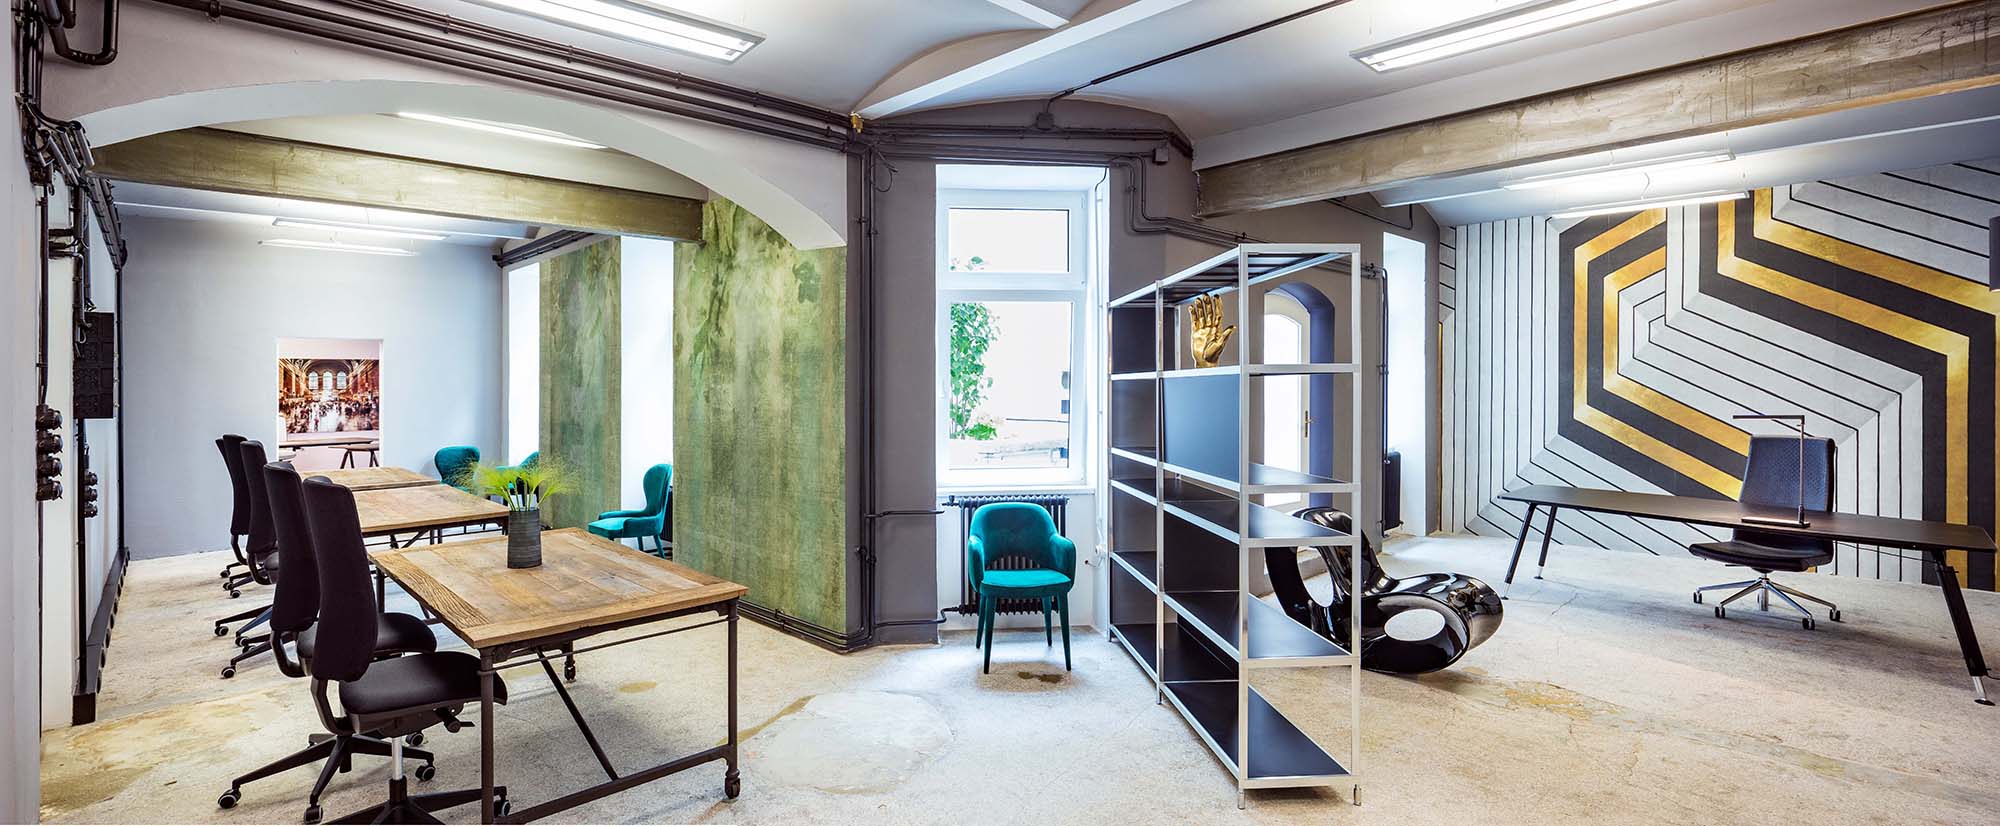 Tapeten, Farben und außergewöhnliche Möbel, wie der schwarze Hochglanzsessel Void von Magis, machen aus dieser Souterrain-Fläche ein junges, urbanes Office.